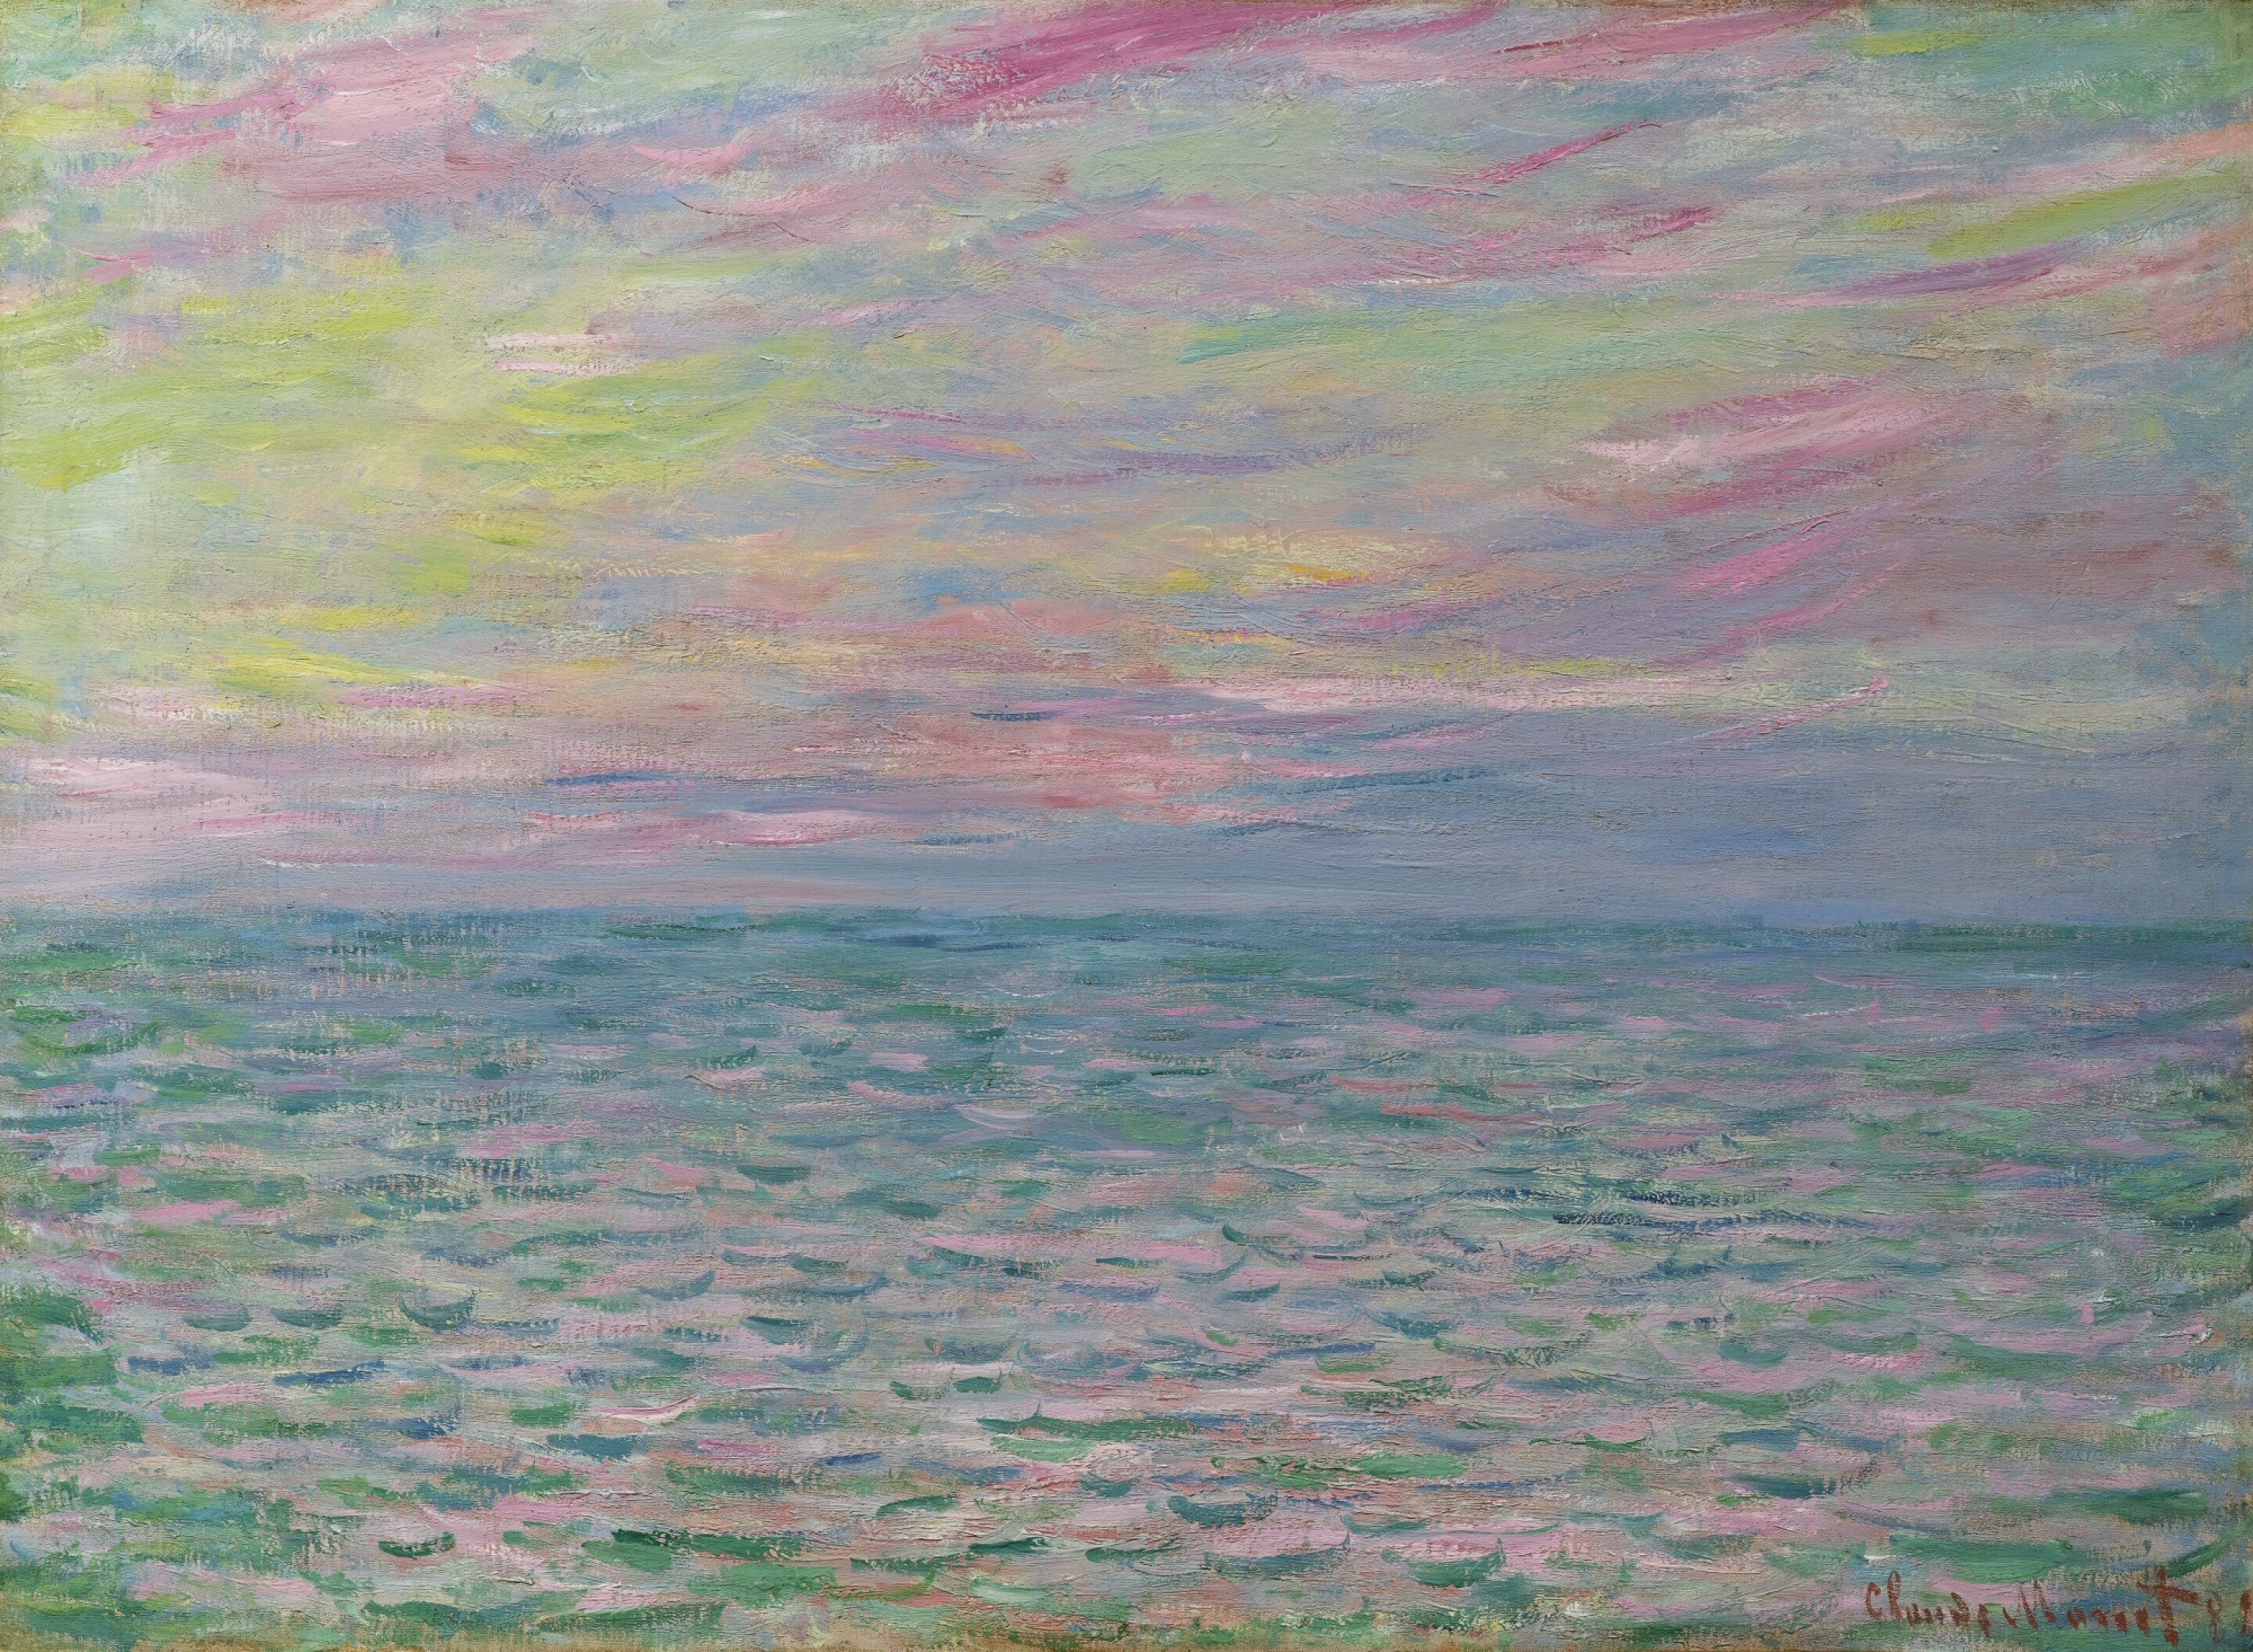 プールヴィルの夕陽、外海 by Claude Monet - 1882年 - 54 x 73.5 cm 